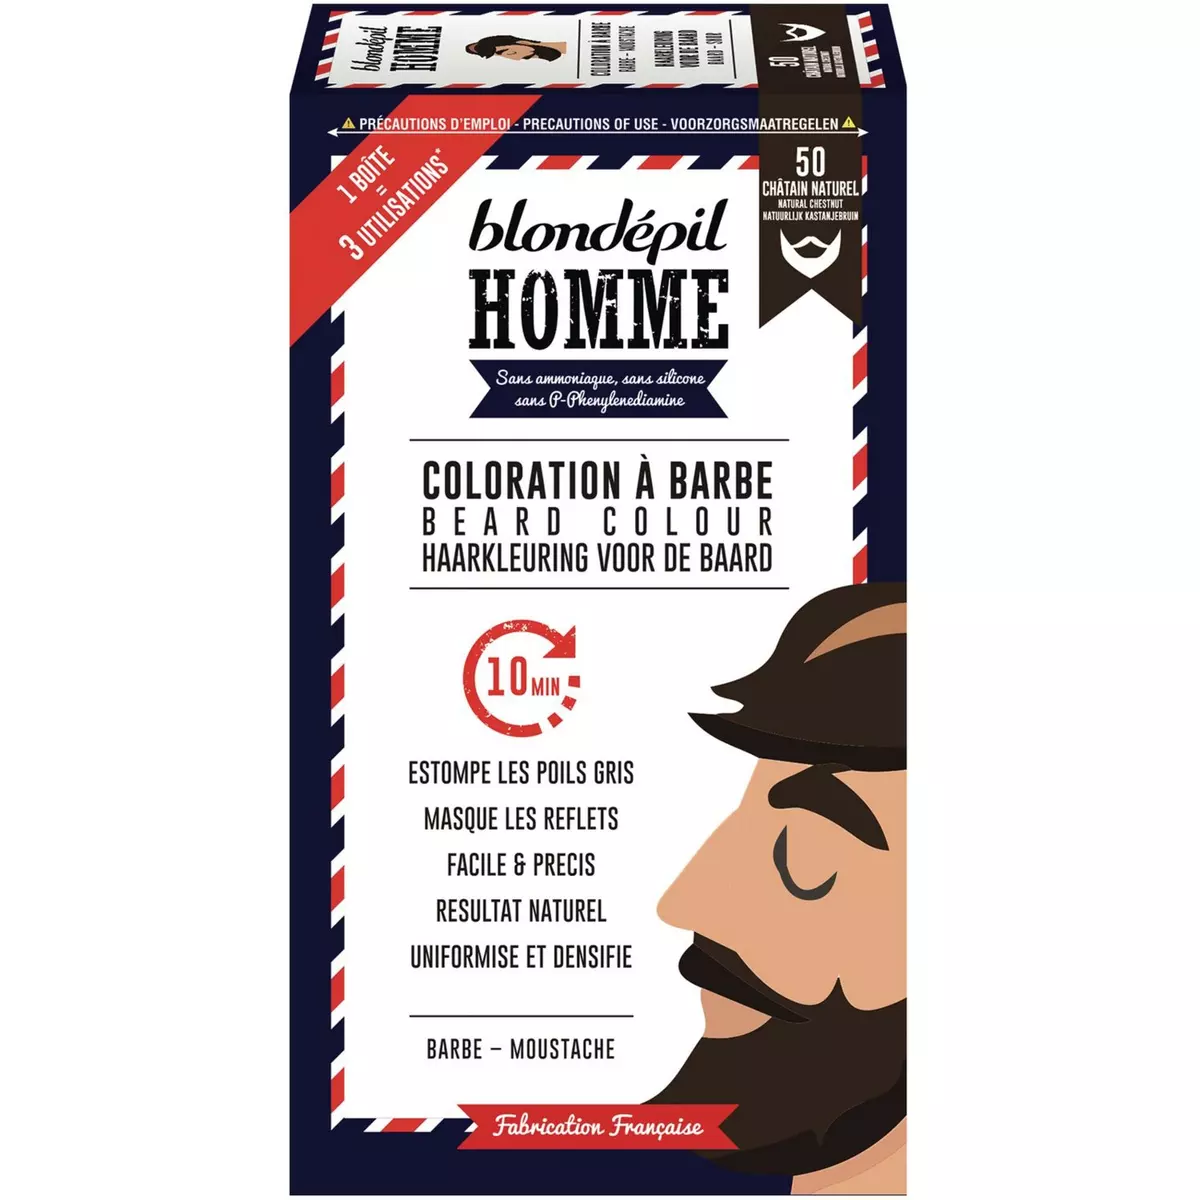 BLONDEPIL HOMME Coloration pour barbe et moustache 50 châtain naturel 3 utilisations 1 boite